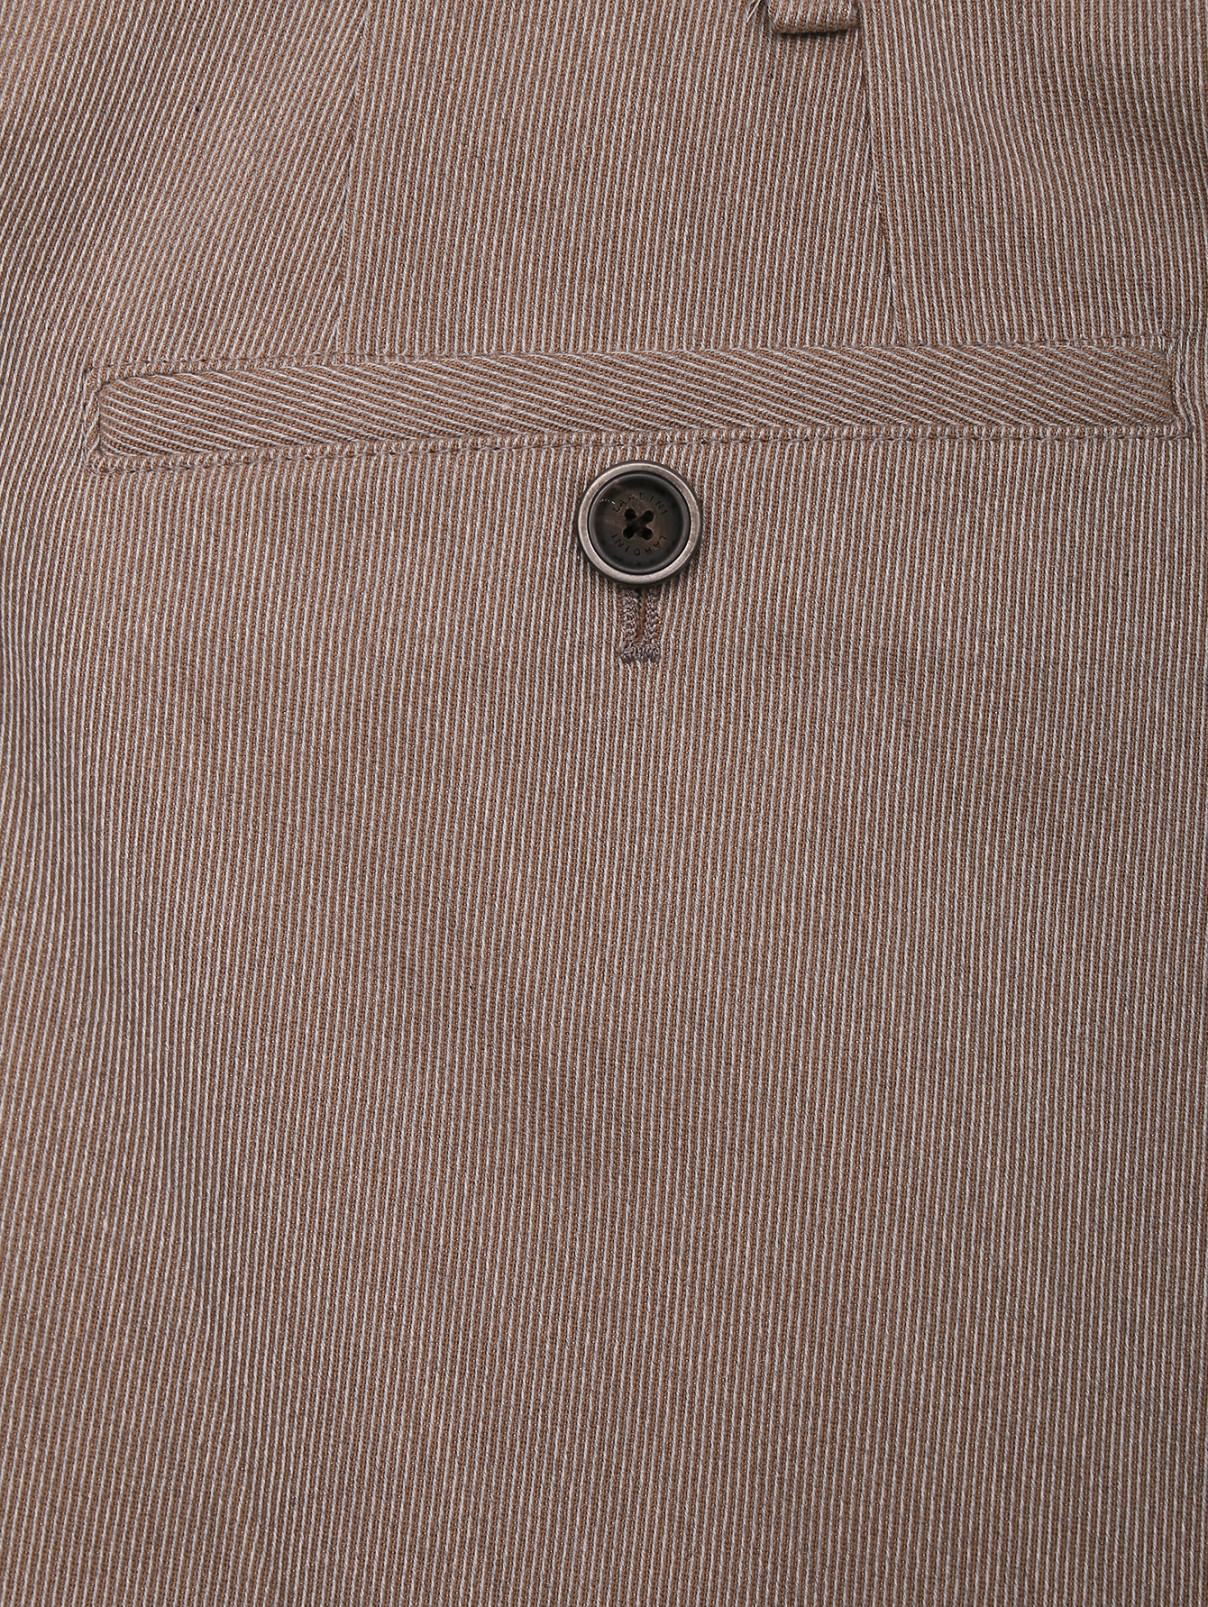 Брюки из шерсти и хлопка с карманами LARDINI  –  Деталь1  – Цвет:  Бежевый